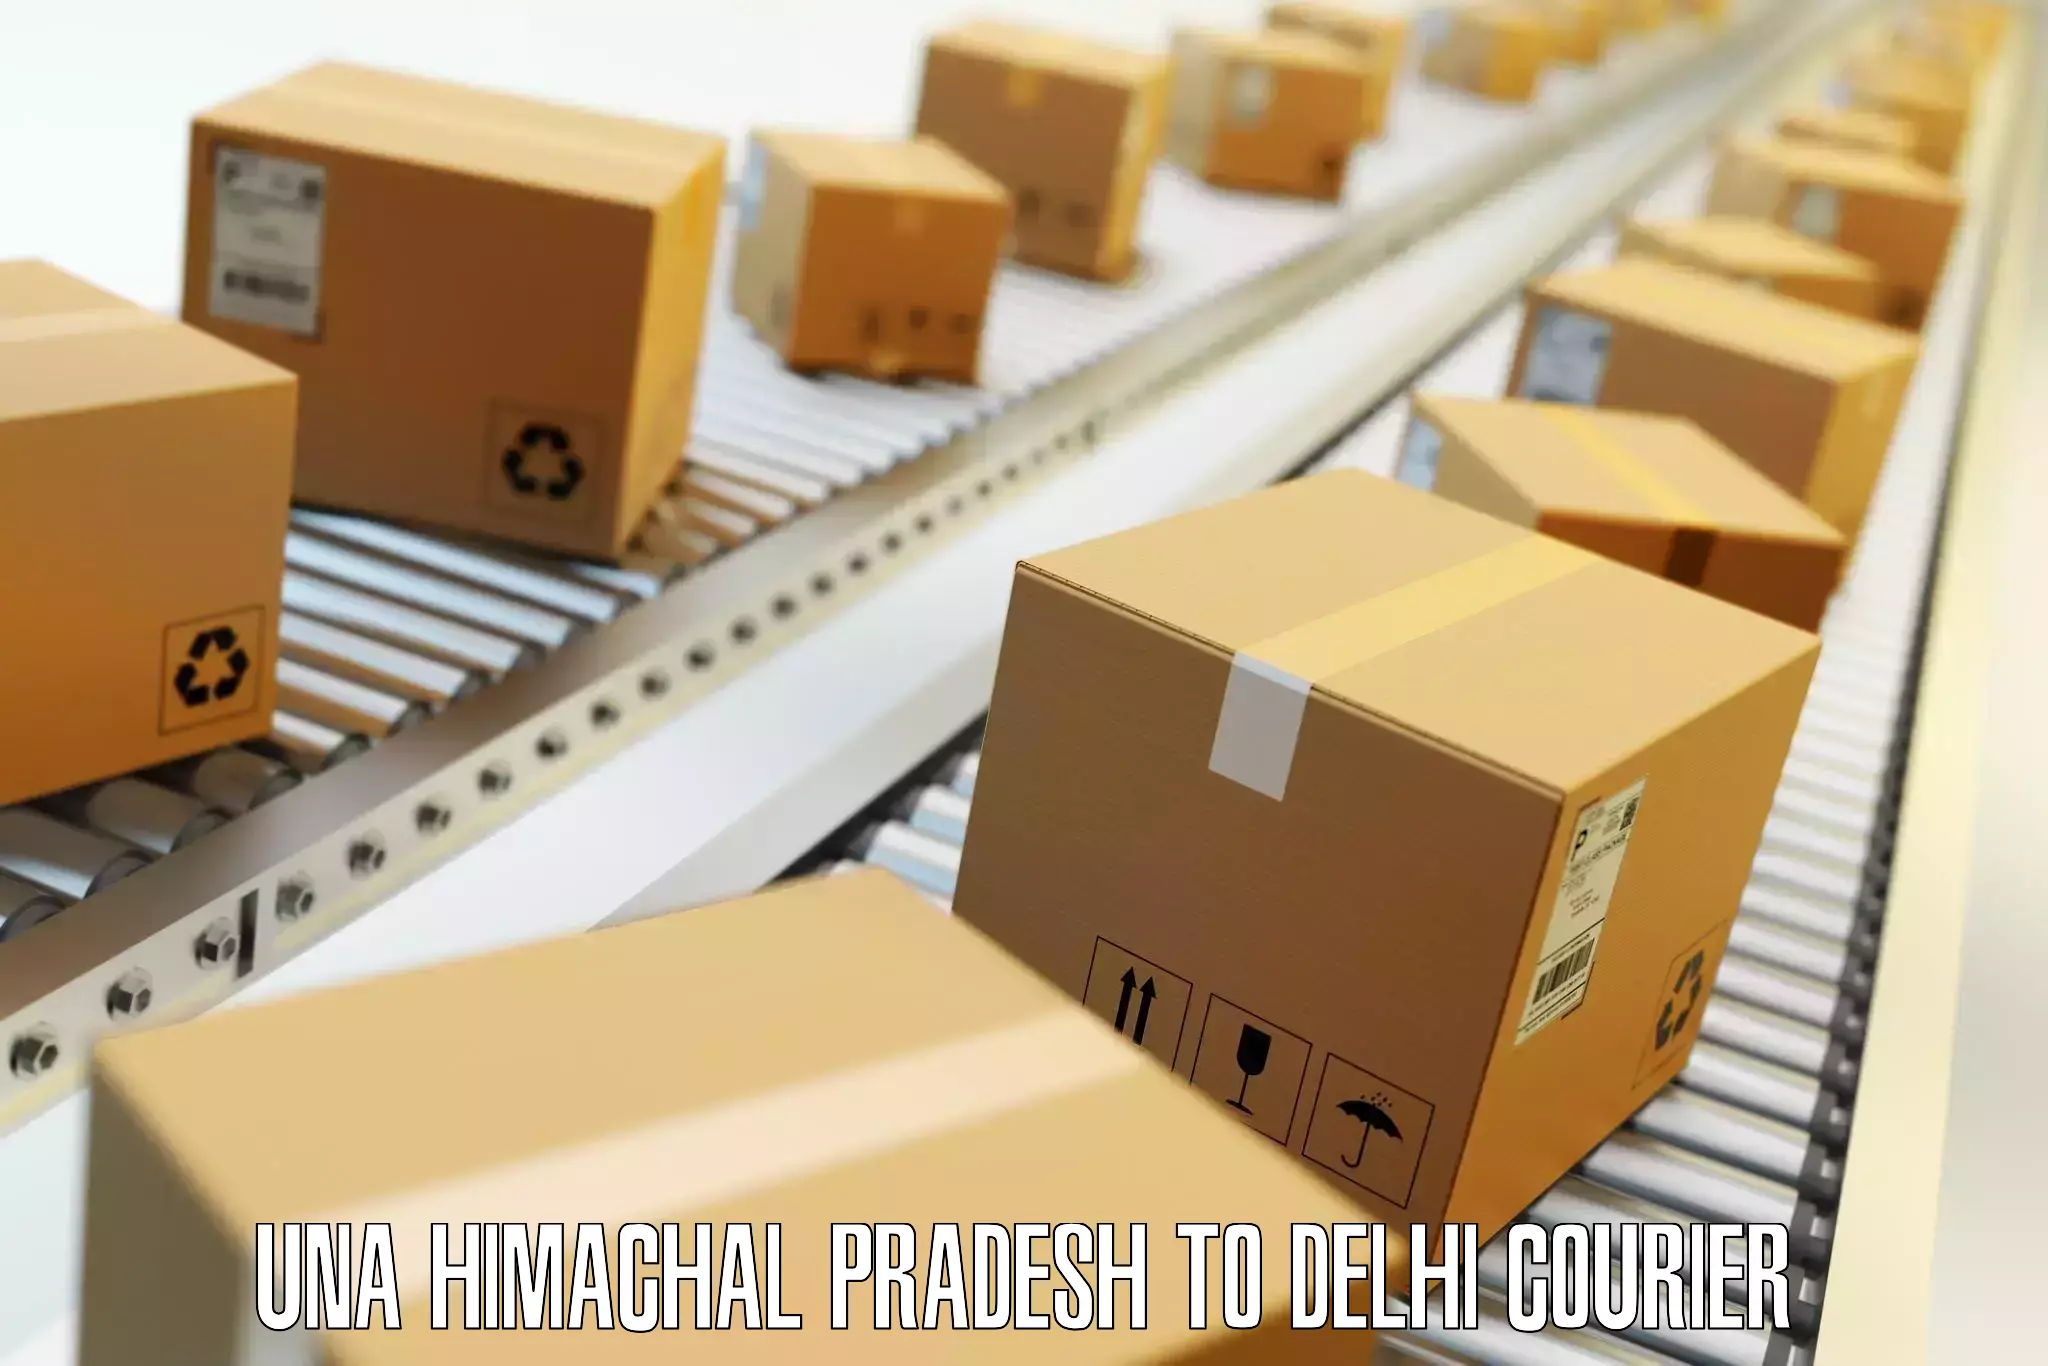 Luggage delivery network Una Himachal Pradesh to Delhi